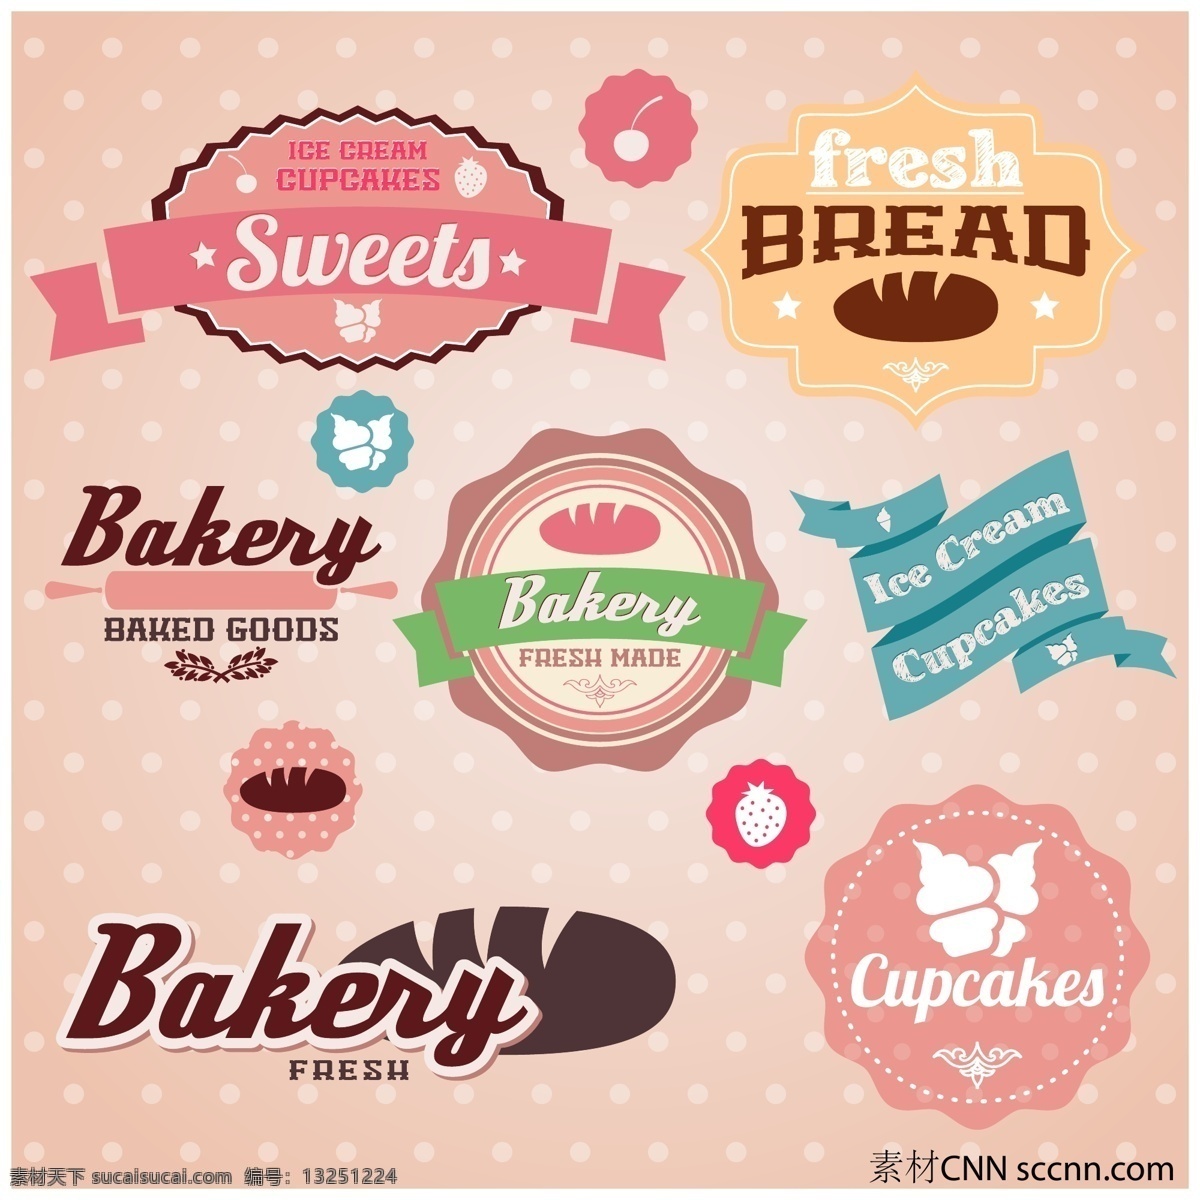 美味 面包 甜品 标签 矢量 标签设计 精美标签 面包标签 模板 设计稿 食物标签 素材元素 甜品标签 炫彩标签 源文件 矢量图